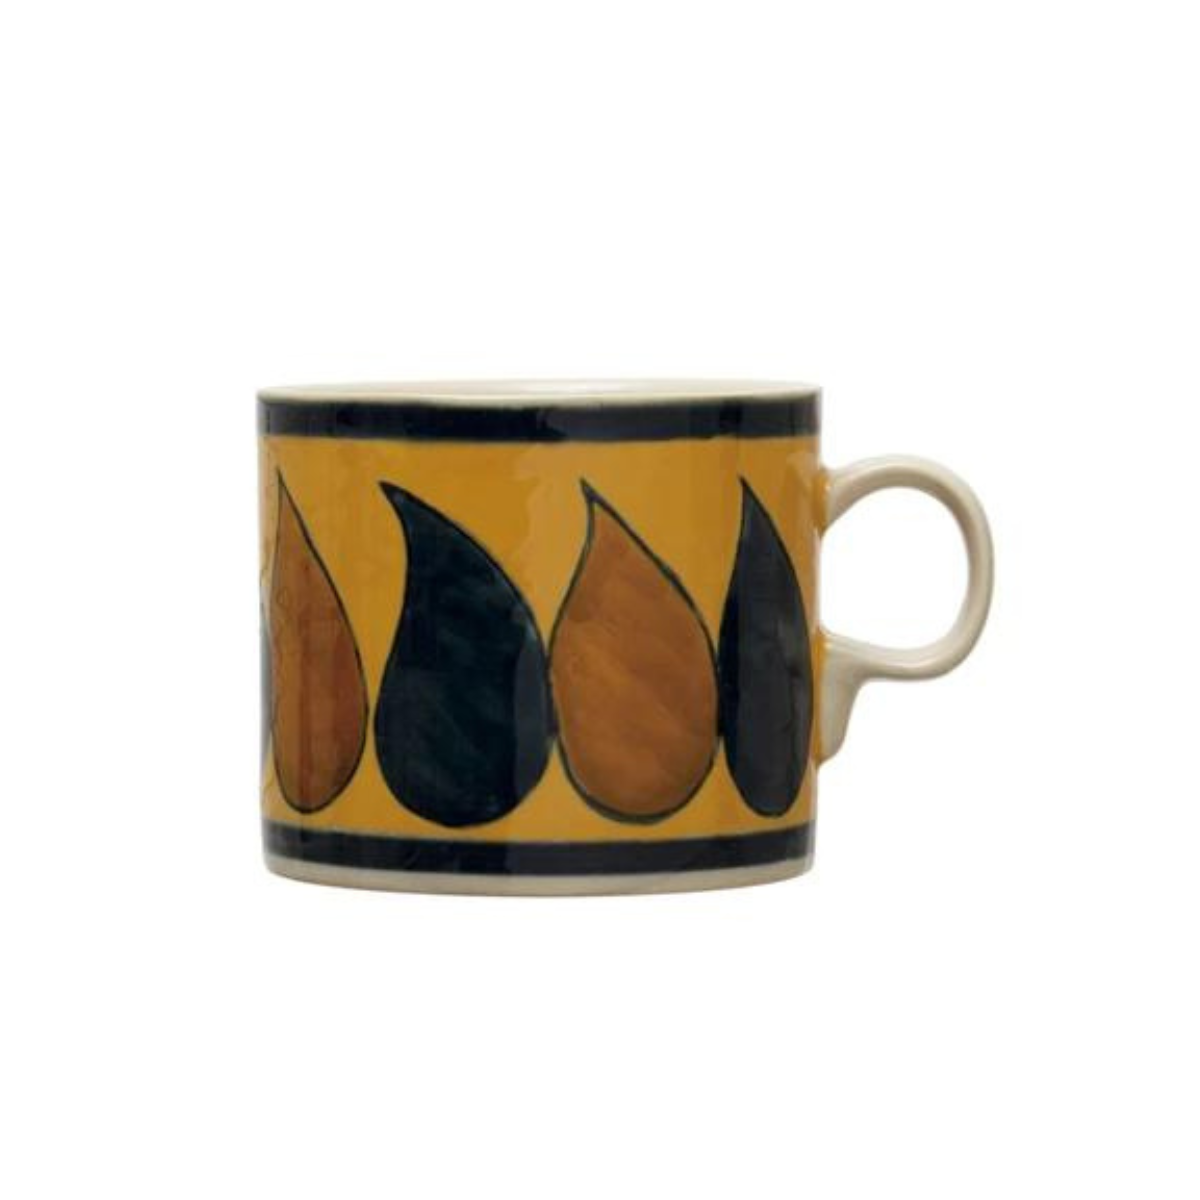 16 oz. Hand-Painted Stoneware Mug w/ Pattern